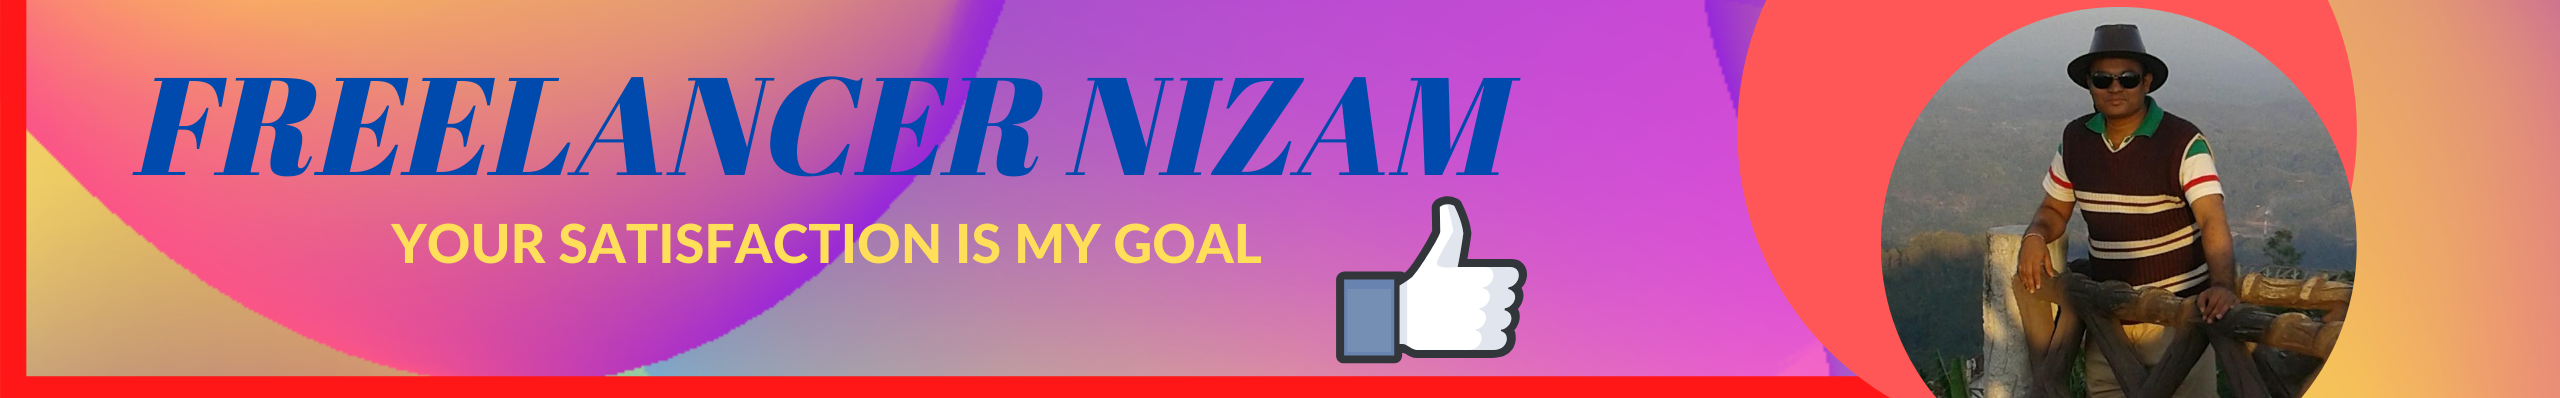 Freelancer NIZAM's profile banner